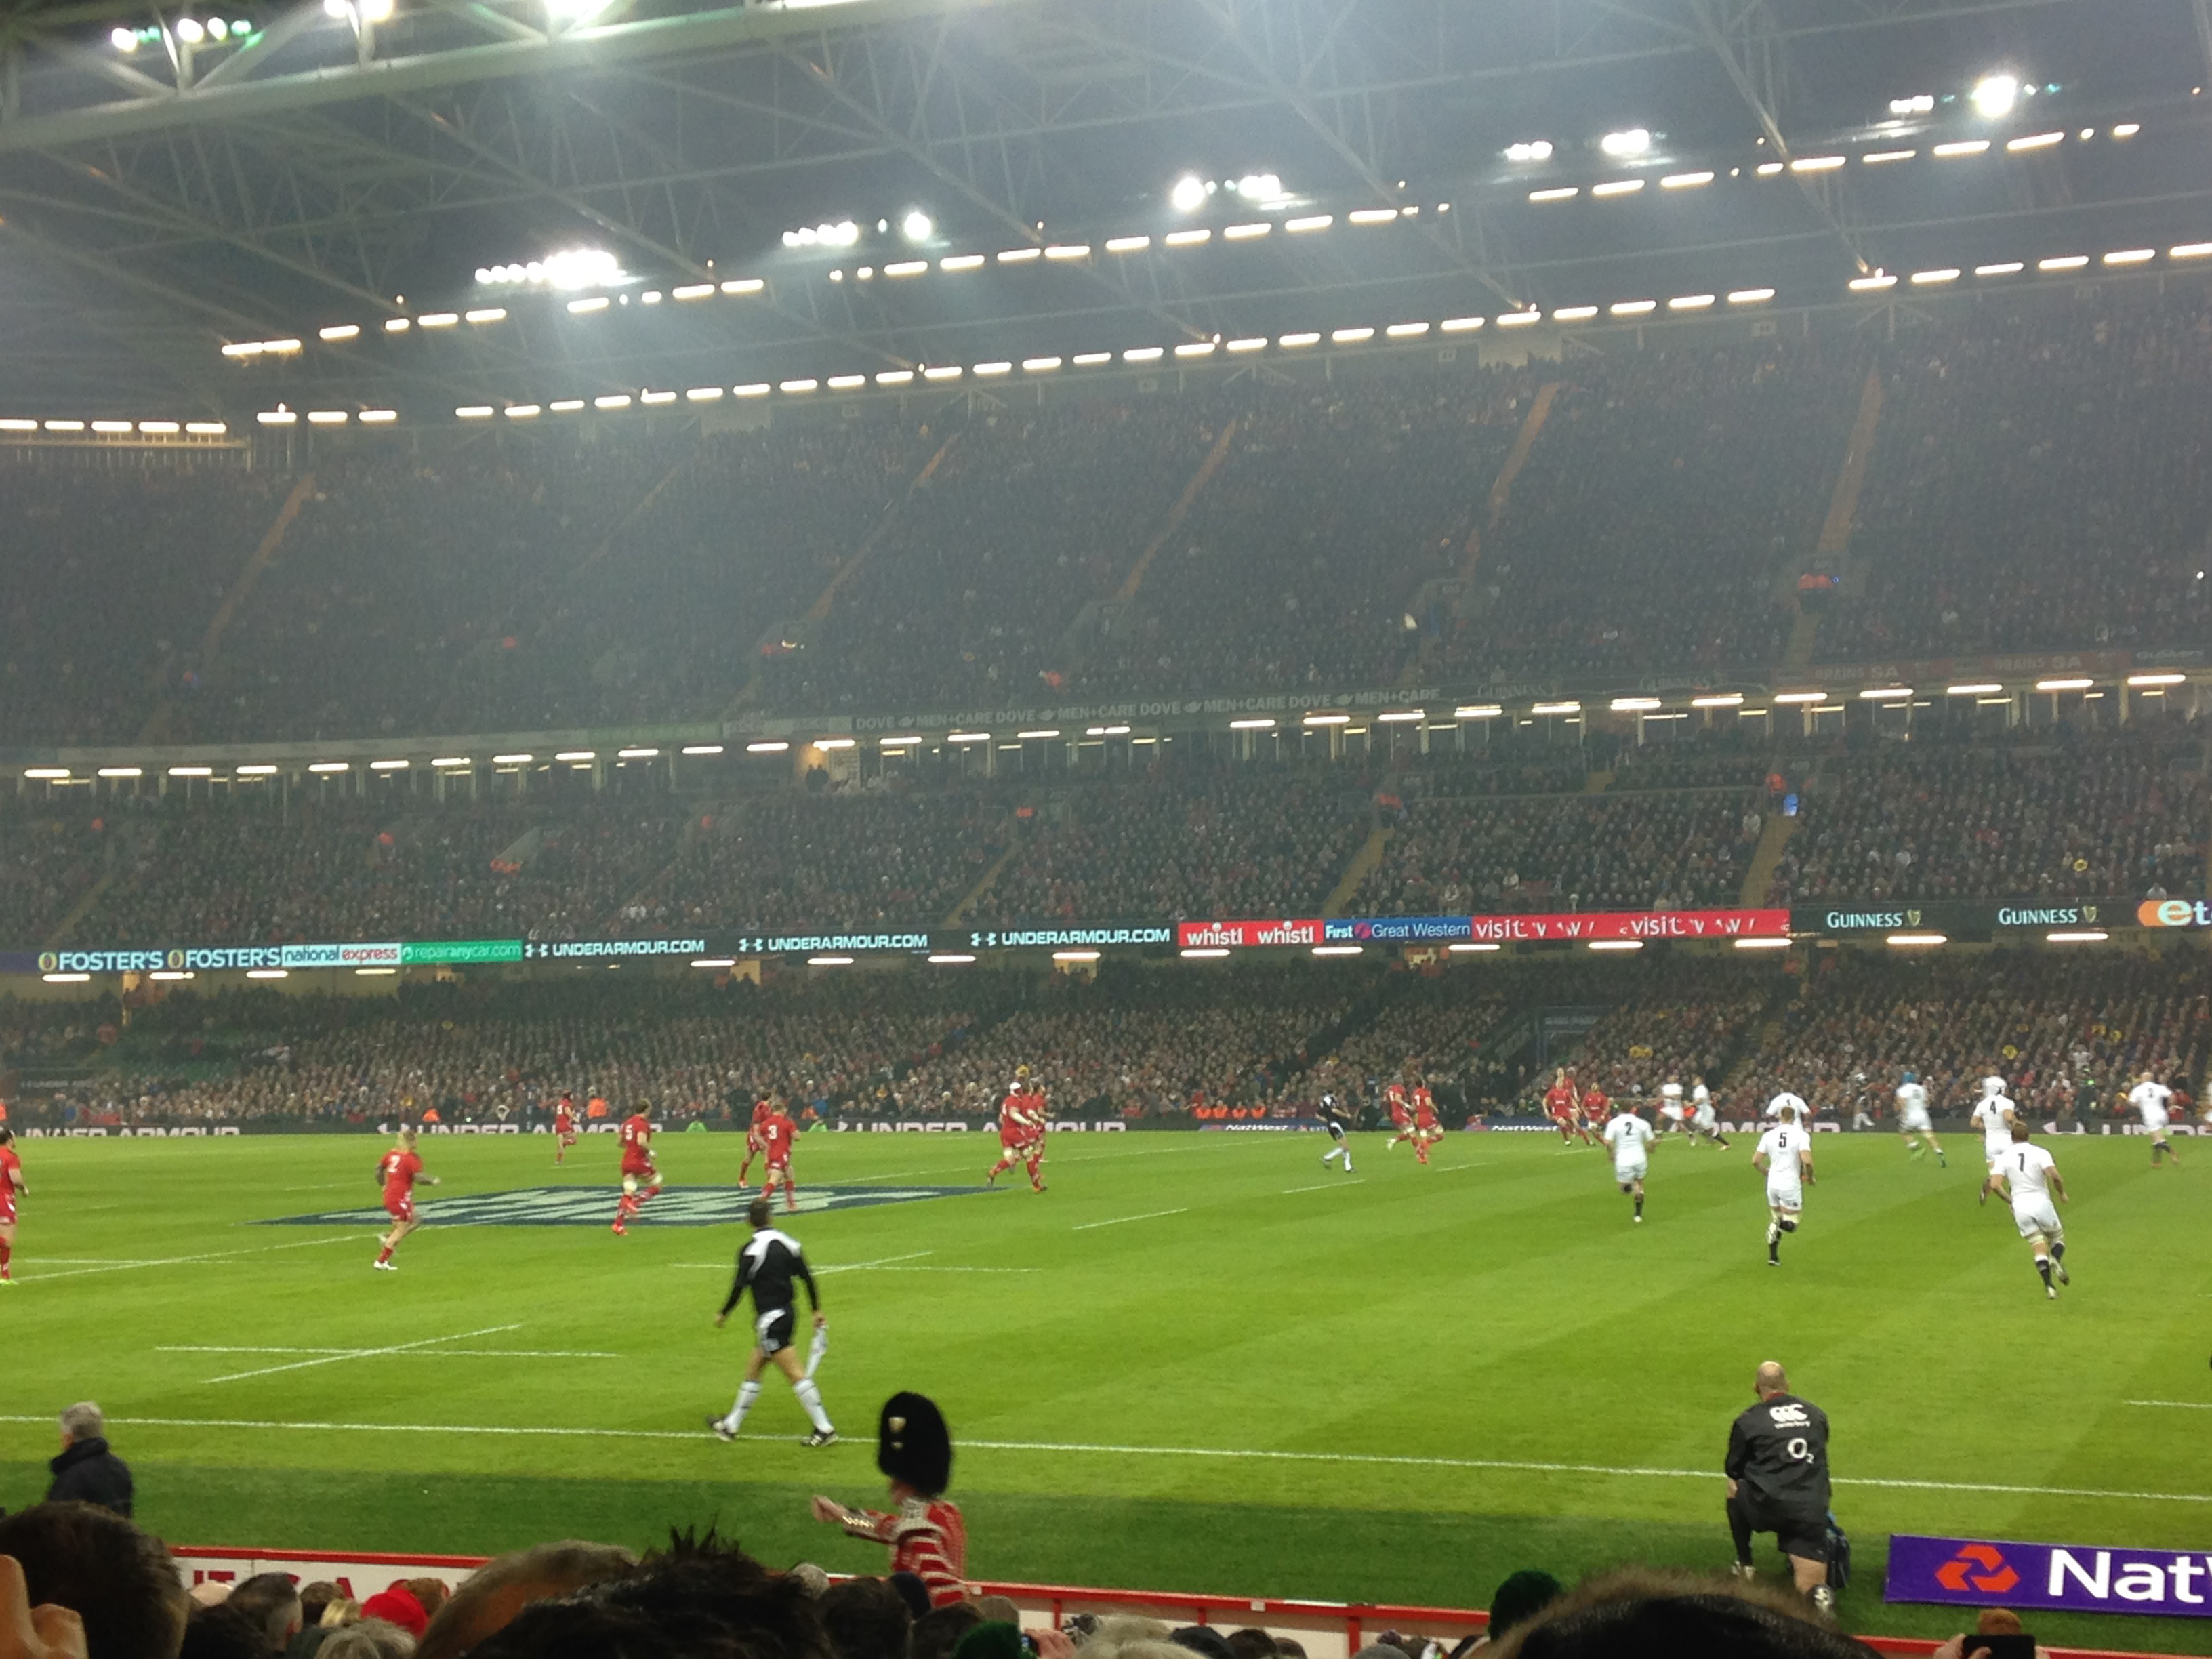 Kick off at Wales v England (6 Feb 2015)